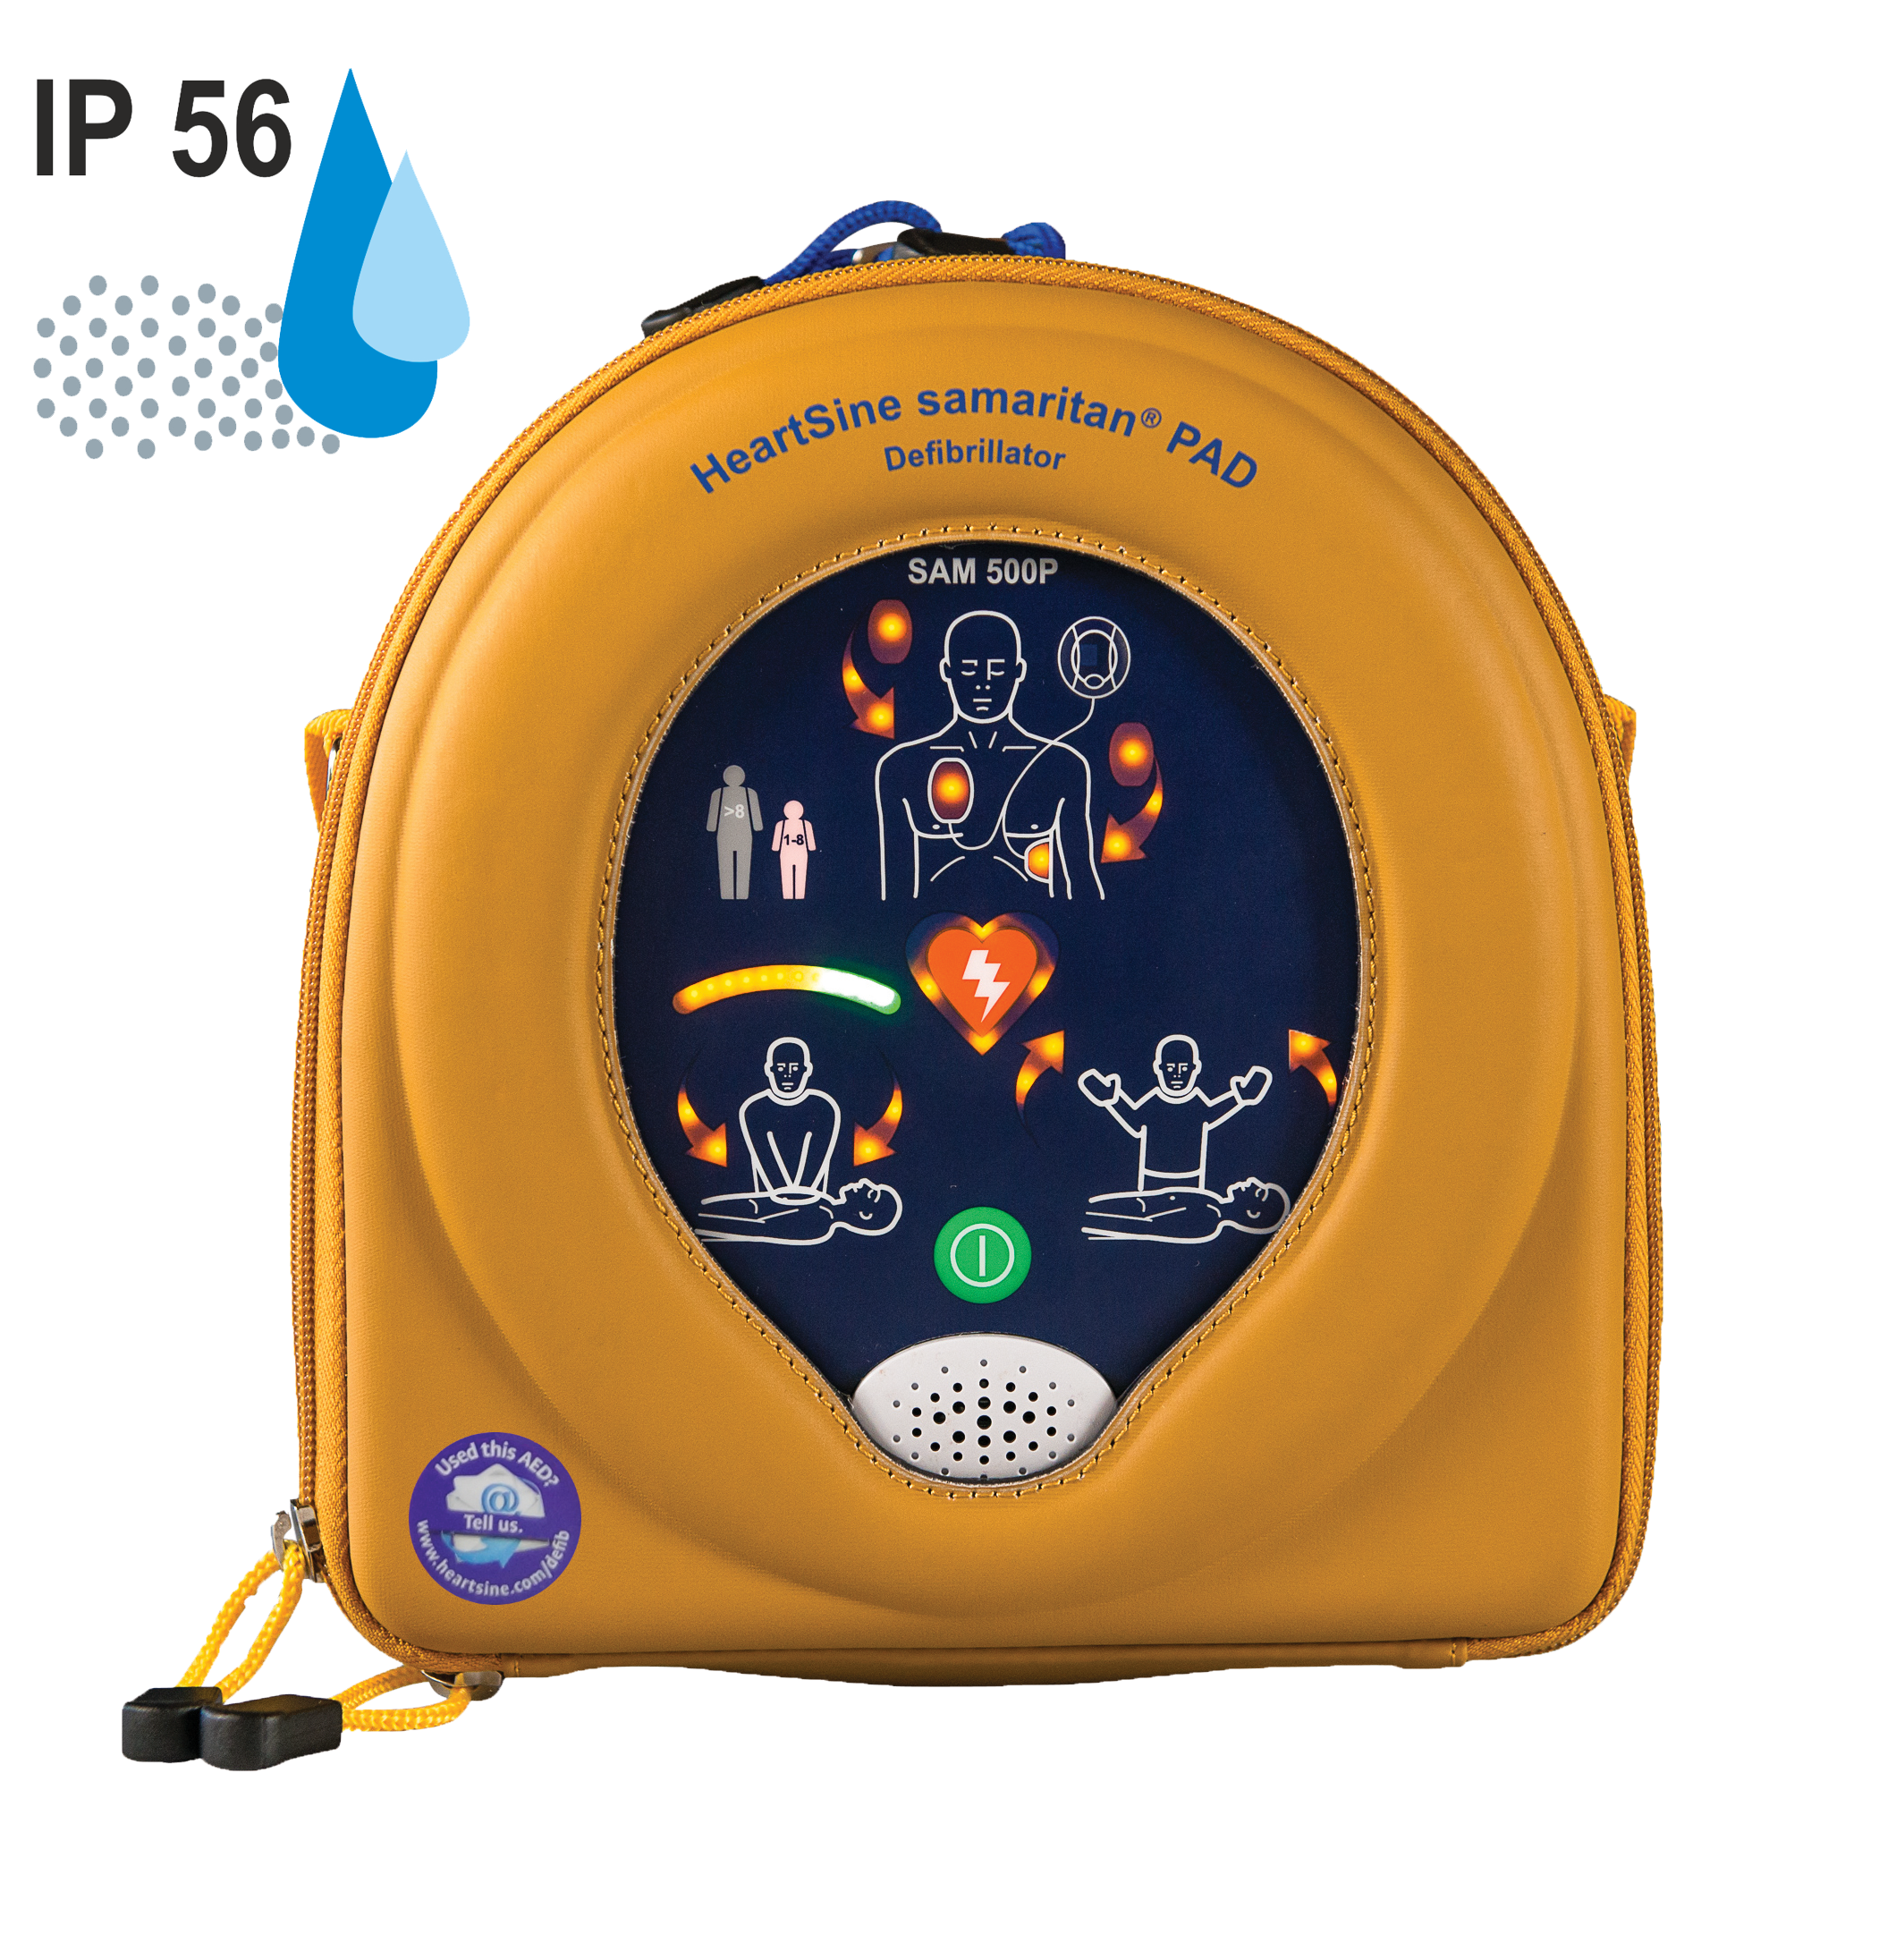 HeartSine SAM 500P Reanimations-Defibrillator/AED, mit Herzdruckmassage-Kontrolle & Echtzeitanleitung, 8 J. Herstellergarantie